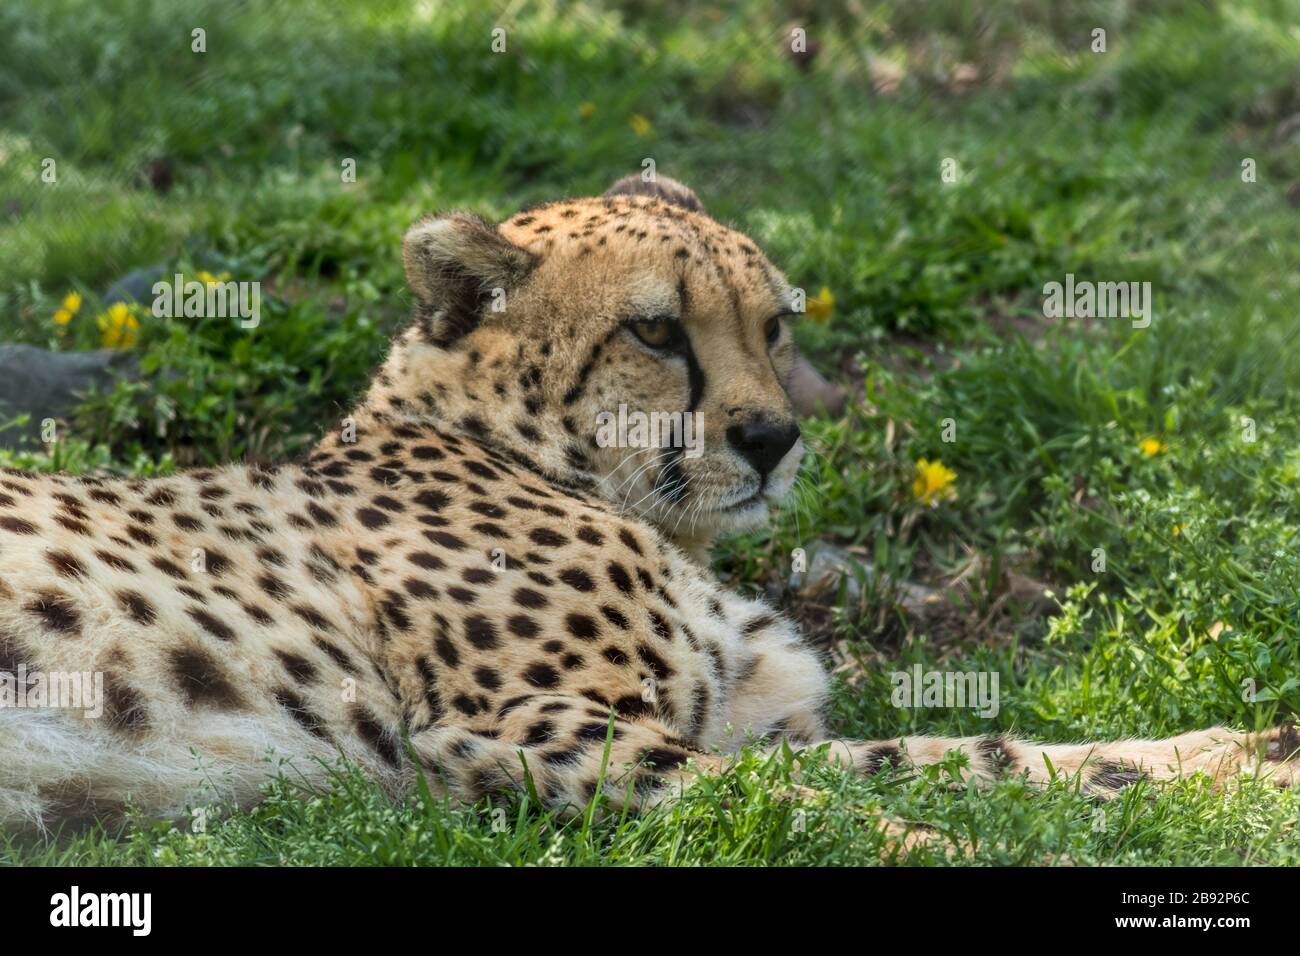 Il ghepardo, l'Acinonyx jubatus, si rilassa in erba verde punteggiata di fiori gialli Foto Stock